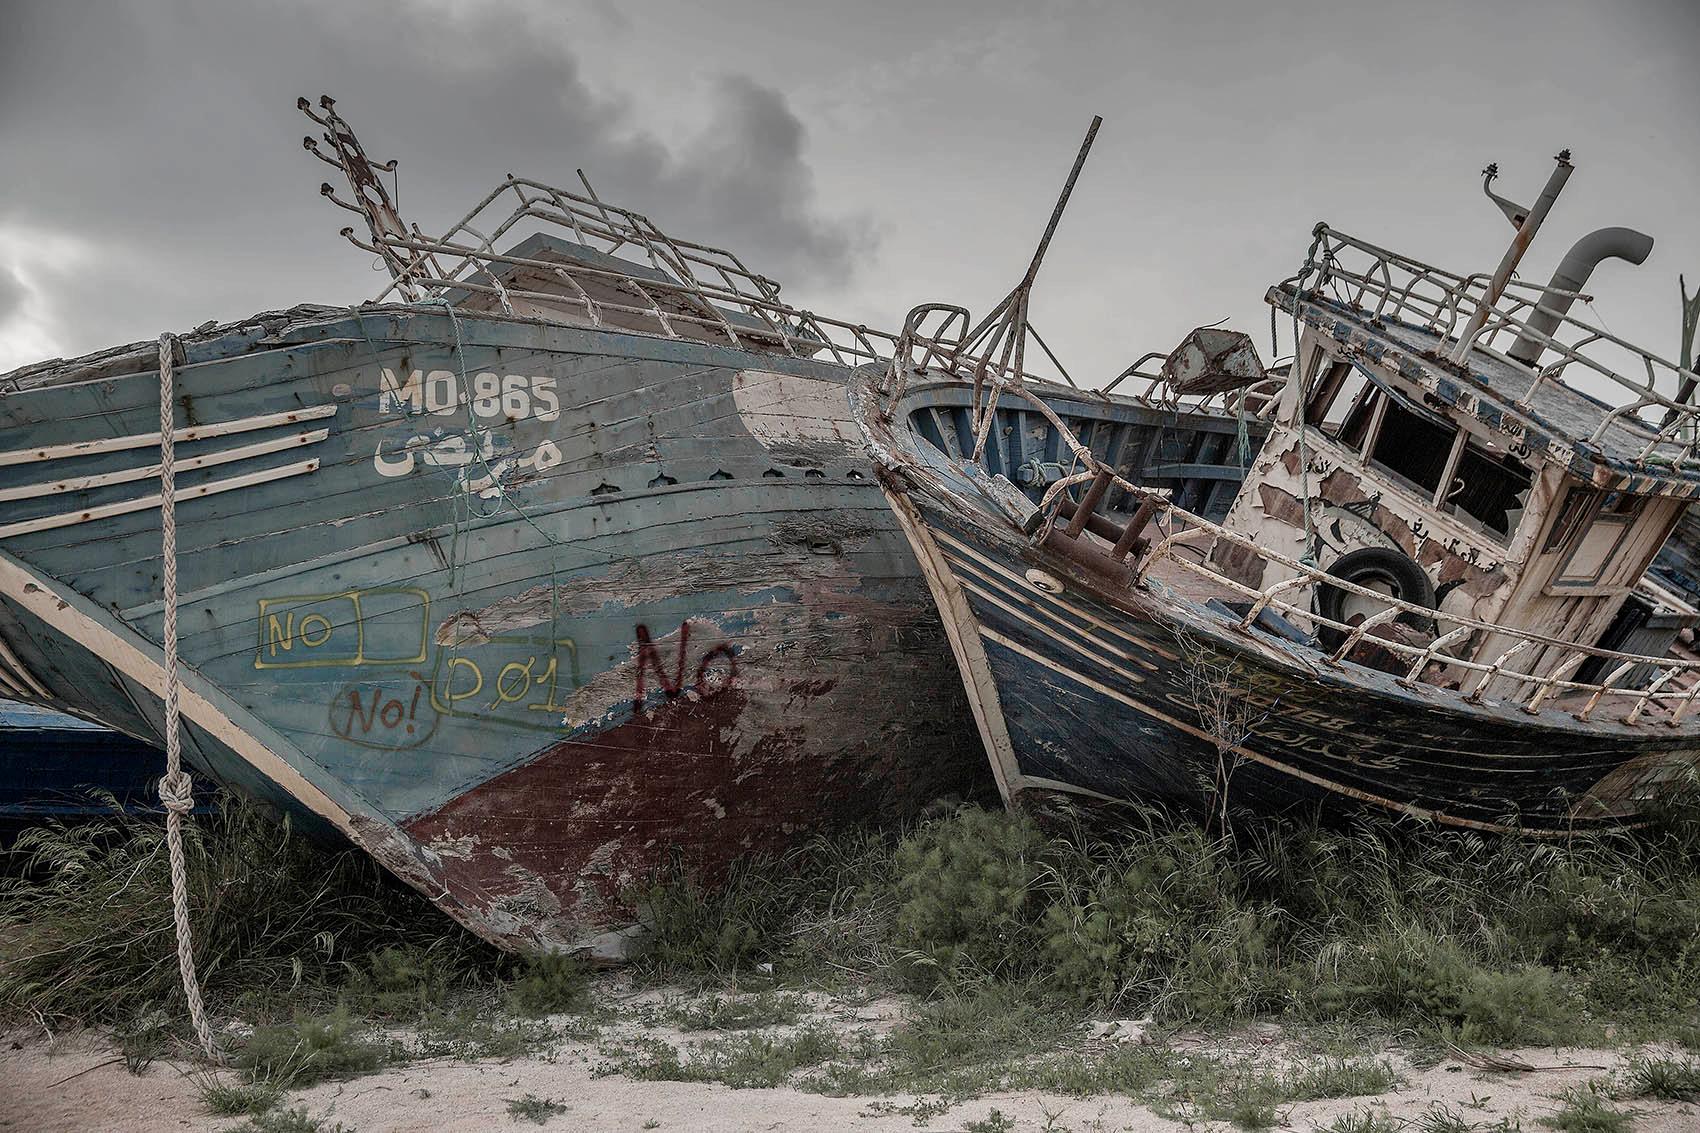 De som överlevt resan till Lampedusa berättar om skräckupplevelser i båtar som knappt håller ihop.